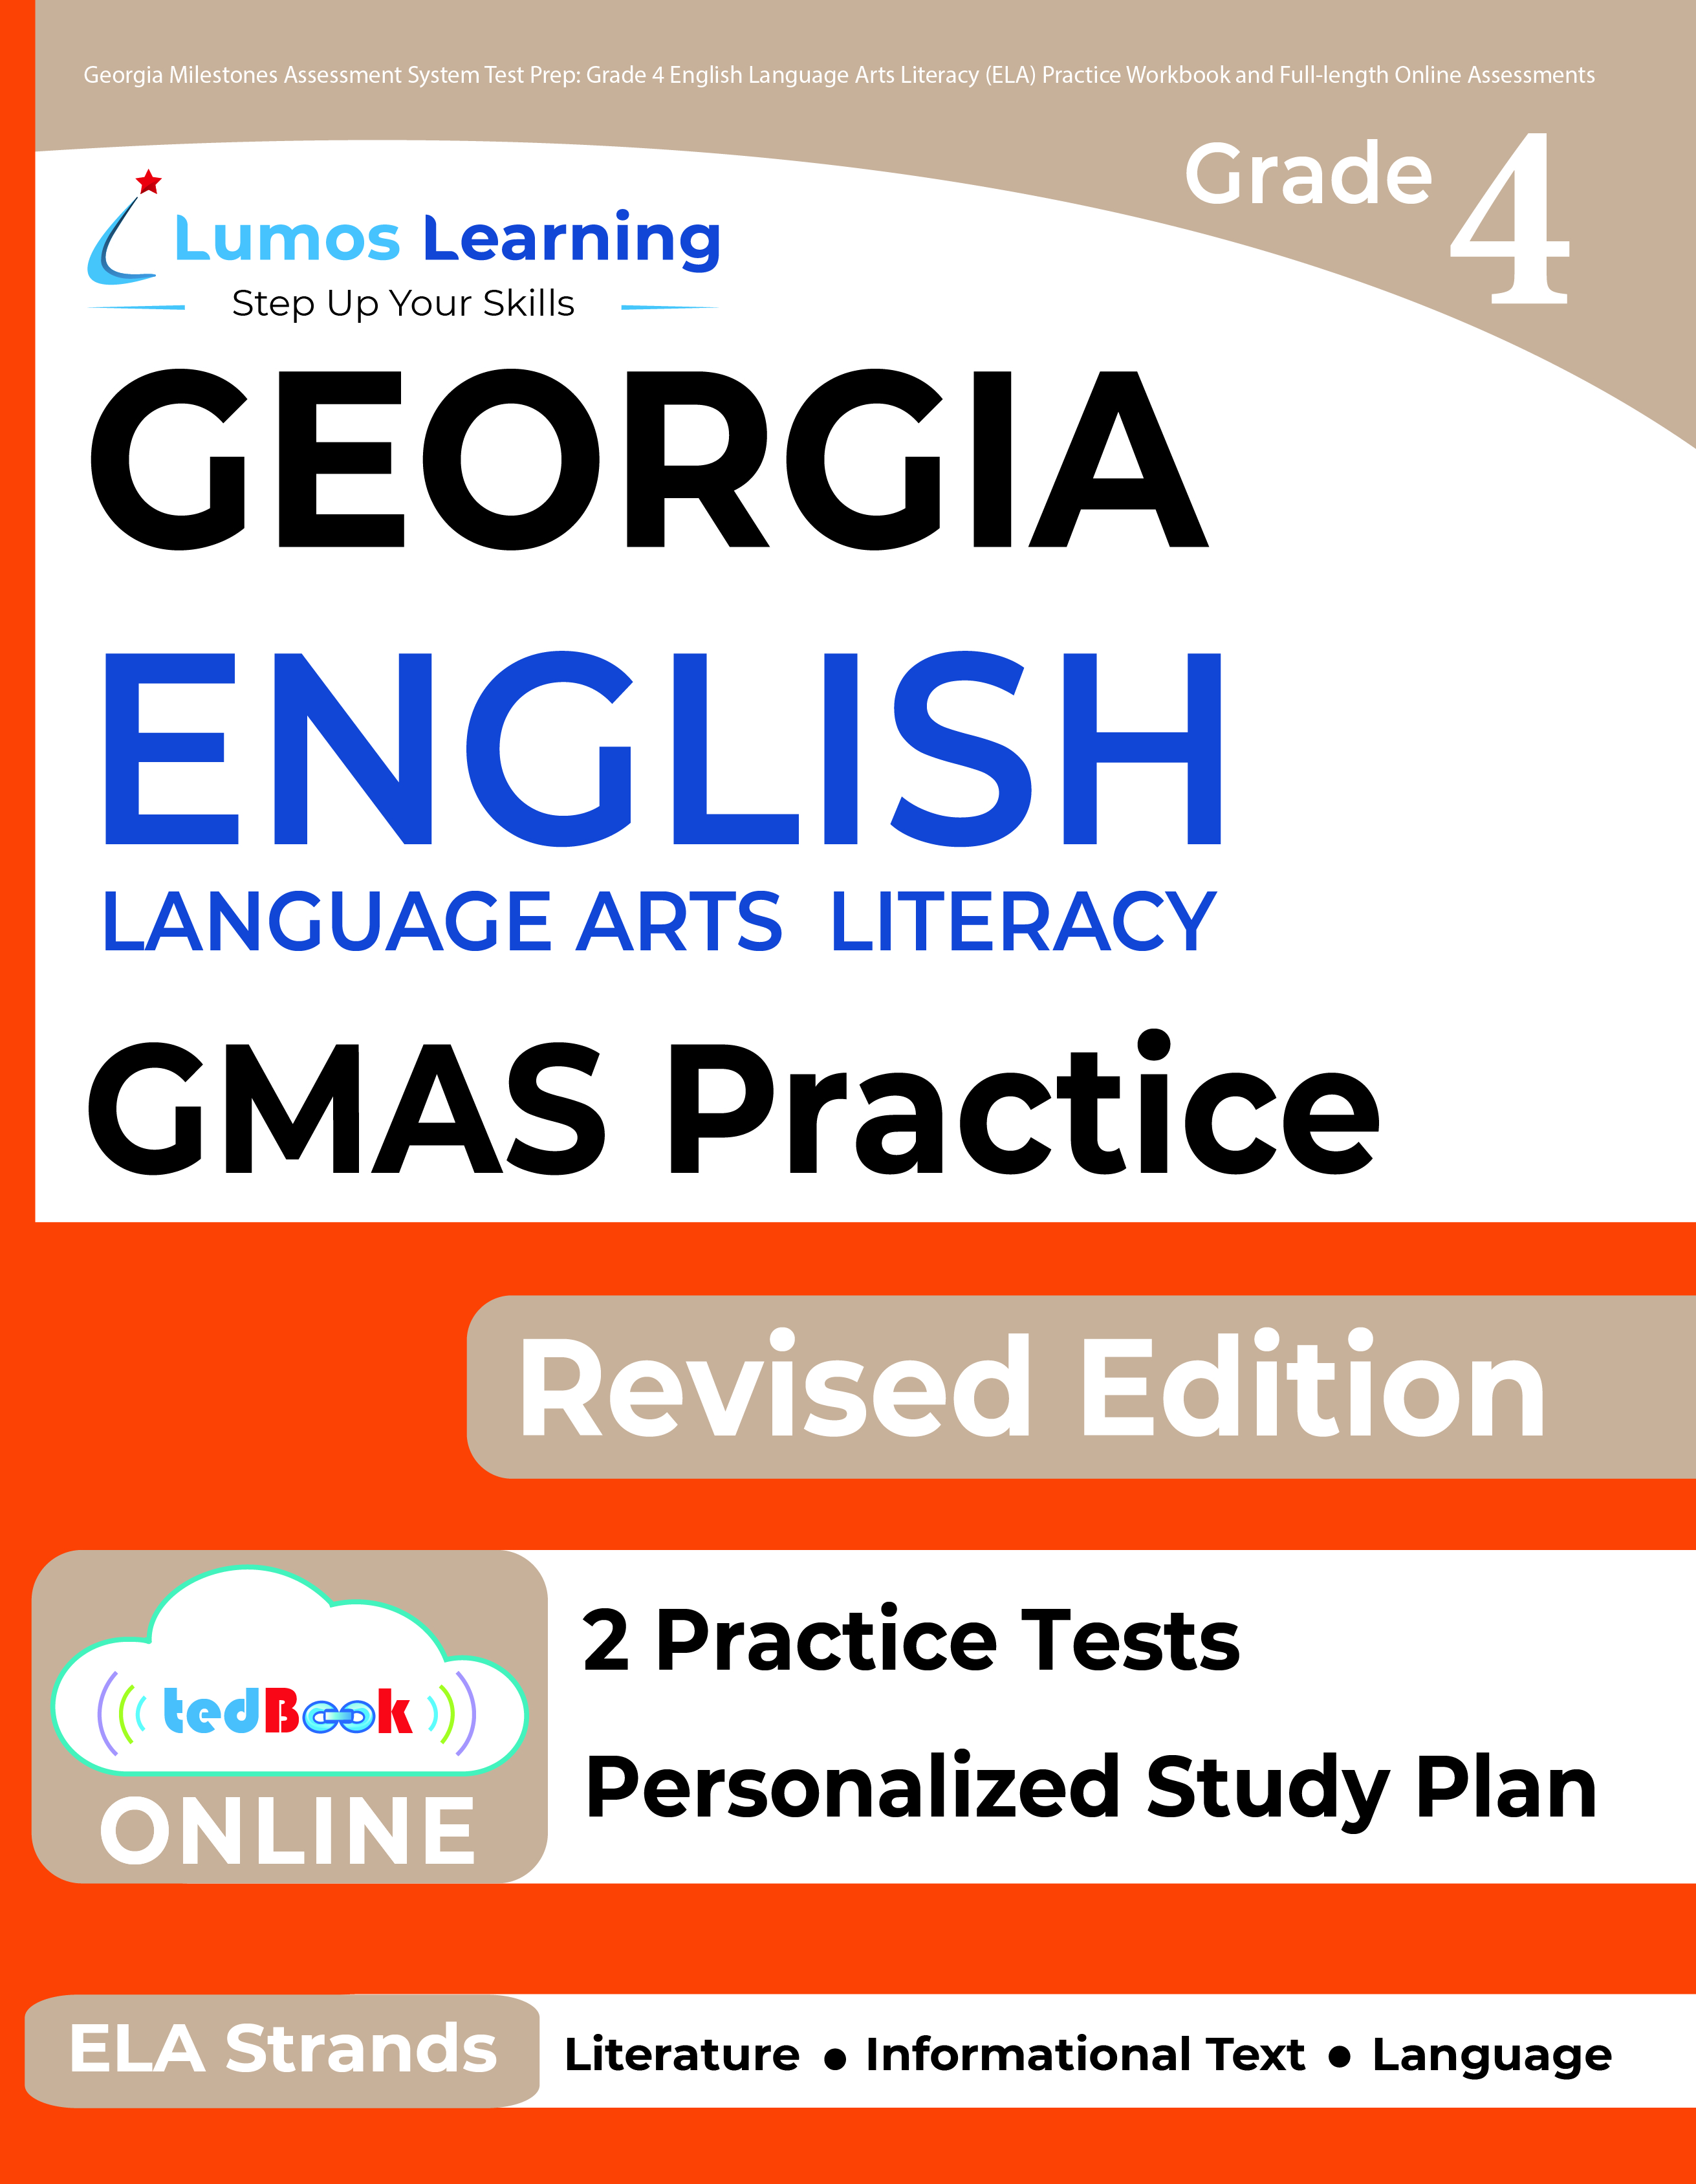 Grade 4 ELA gmas test prep workbooks